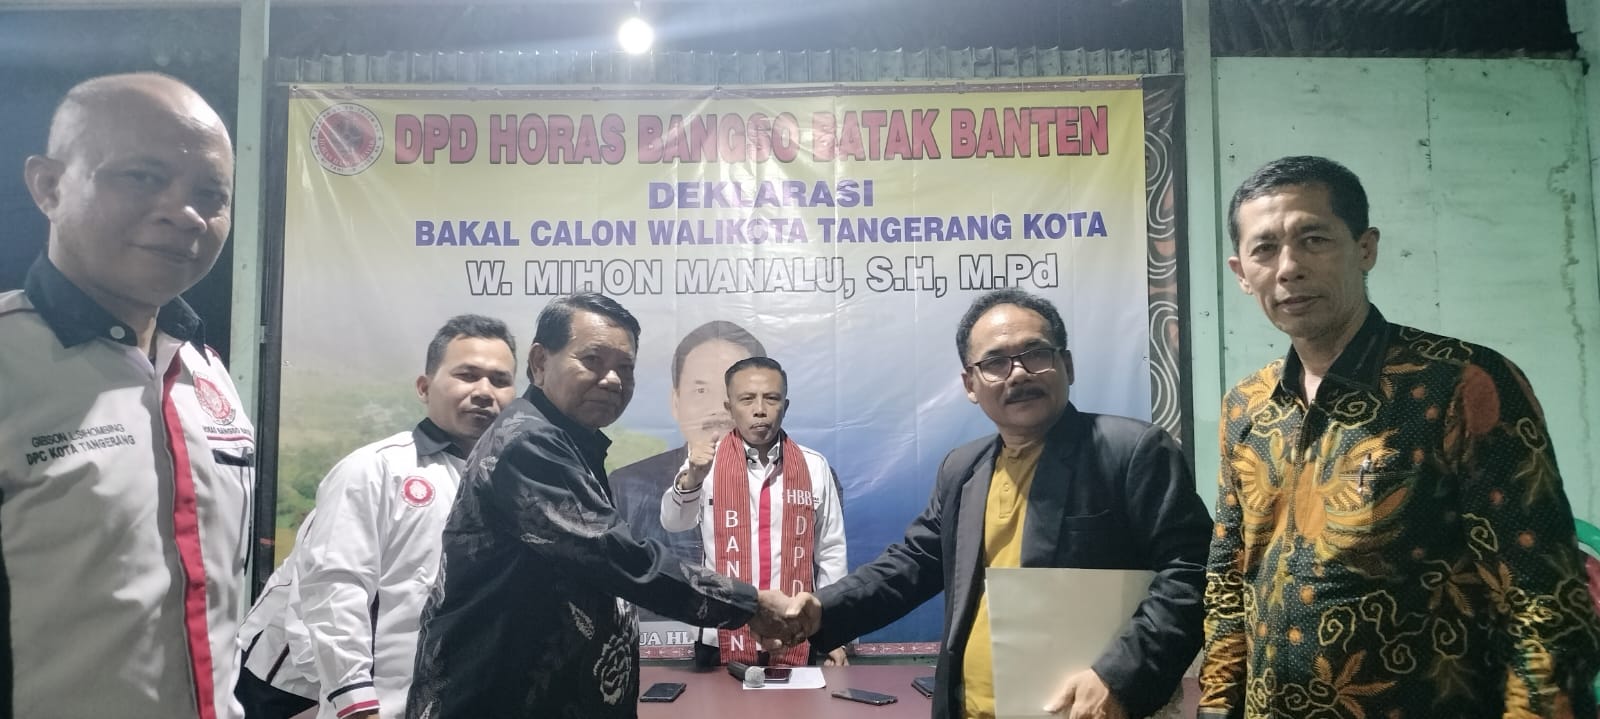 DPD Horas Bangso Batak Prov Banten Usulkan Wasri Mihon Manalu Maju Sebagai Kandidat Calon Walikota Tangerang